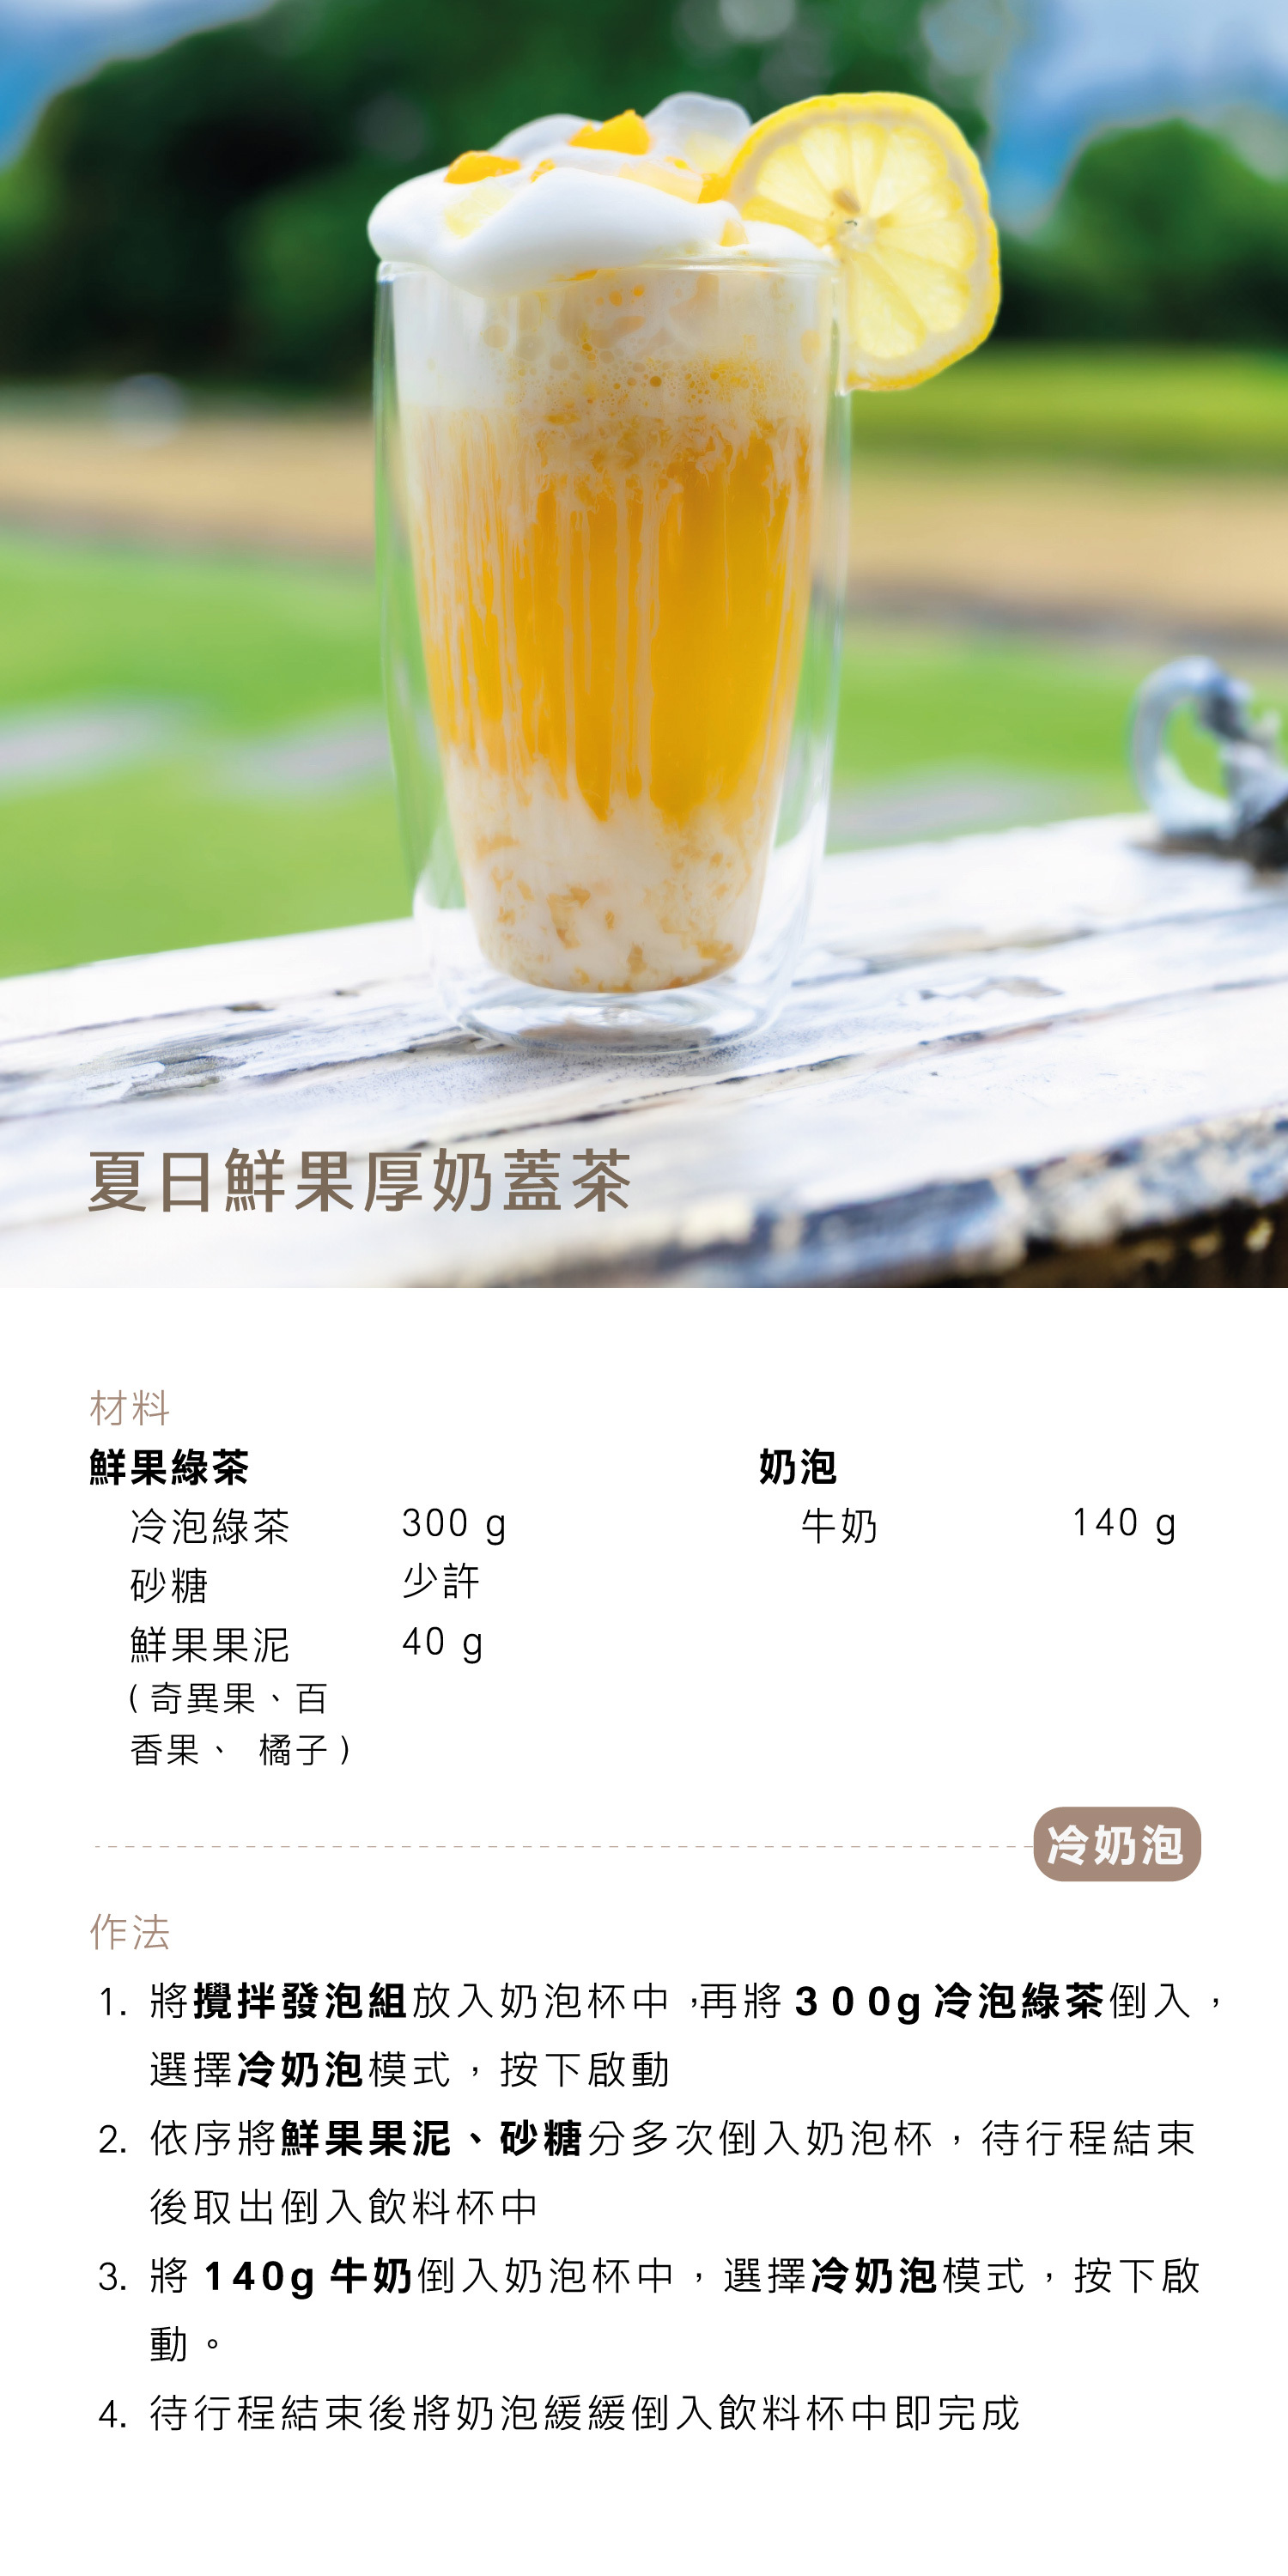 夏日鮮果厚奶蓋茶 - AIWA 奶泡攪拌機 AMF-500 Recipe 食譜 飲料教學